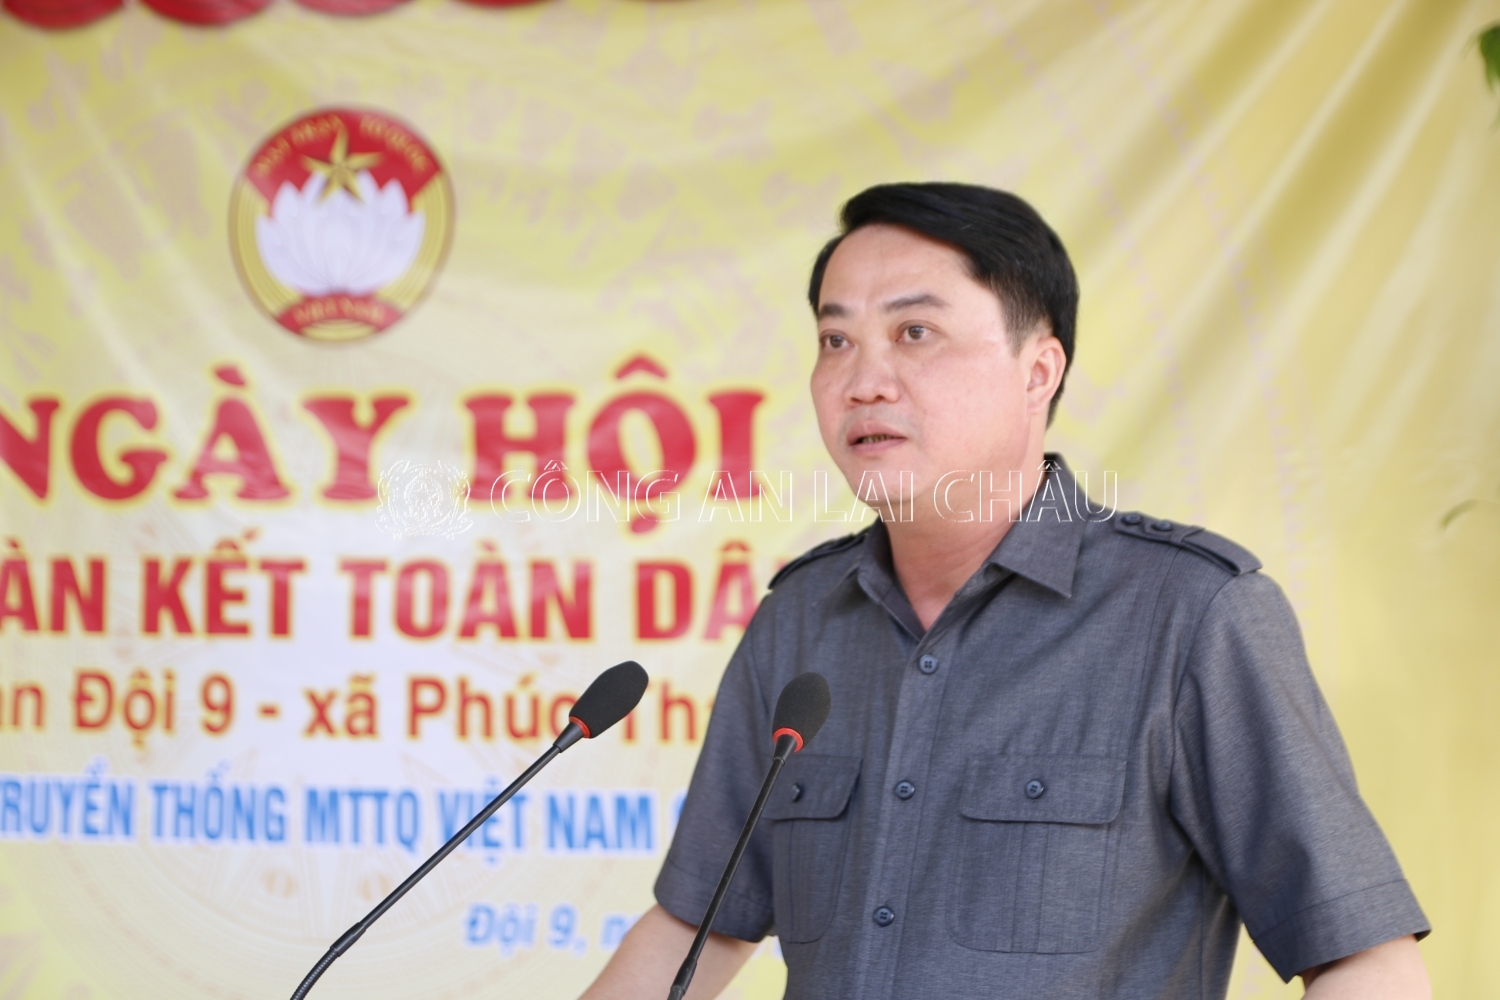 Đại tá Nguyễn Viết Giang - Ủy viên Ban Thường vụ Tỉnh ủy, Giám đốc Công an tỉnh phát biểu tại ngày hội